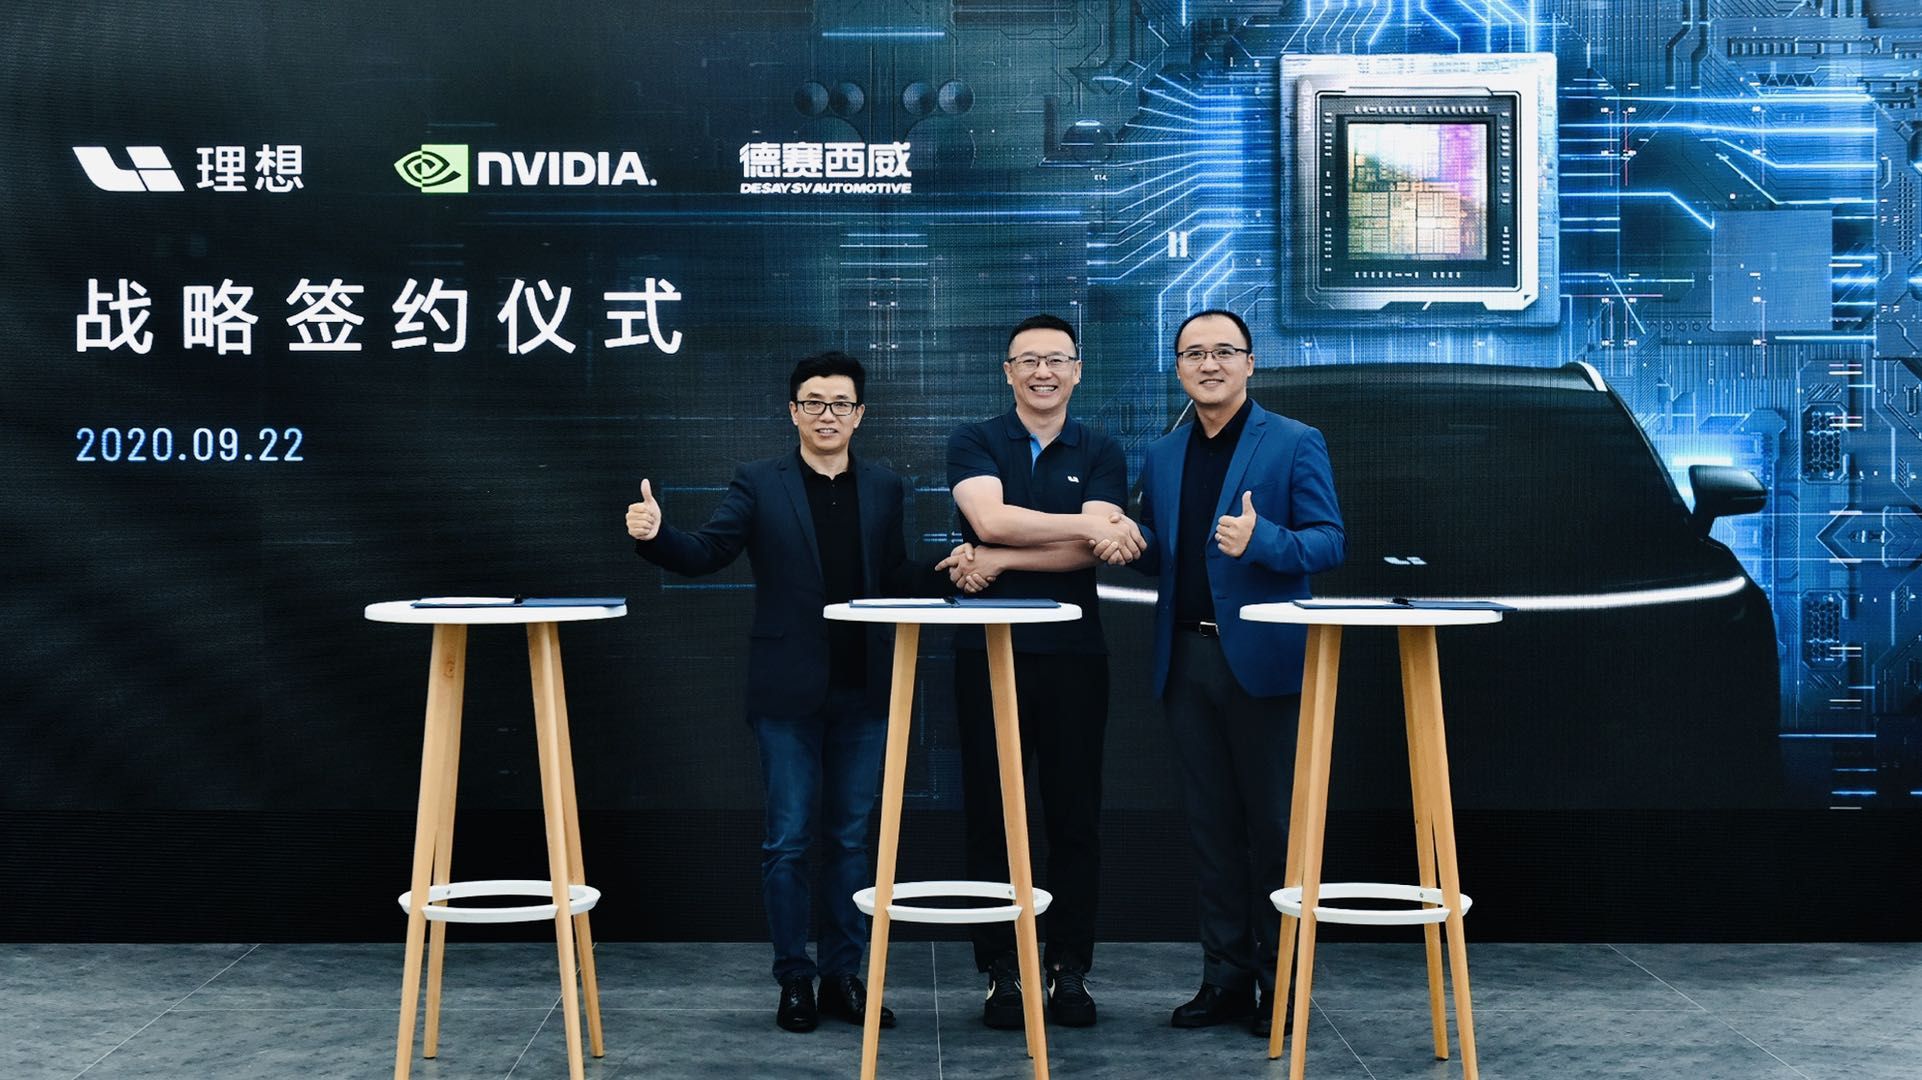 左一：NVIDIA全球副总裁、中国区总经理张建中，中间：理想汽⻋联合创始人兼总裁沈亚楠，右一：德赛⻄威总经理高大鹏。